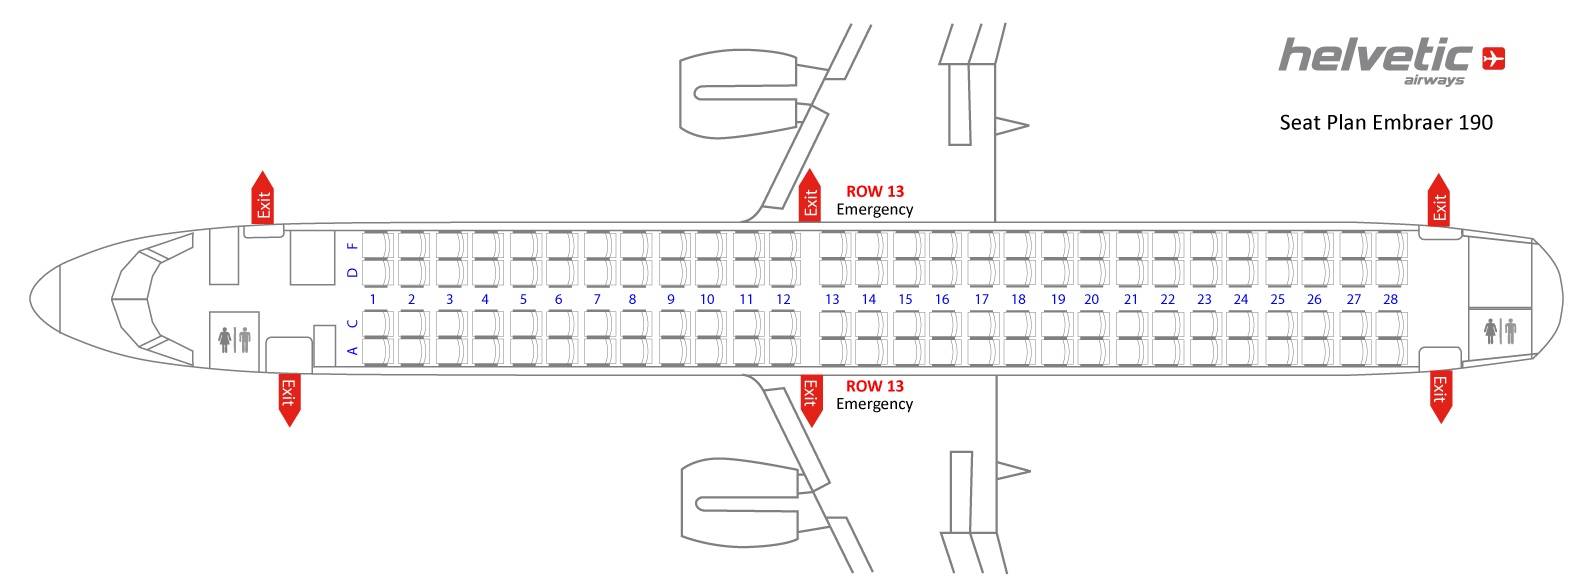 Схема салона эмбраер 170 s7 airlines